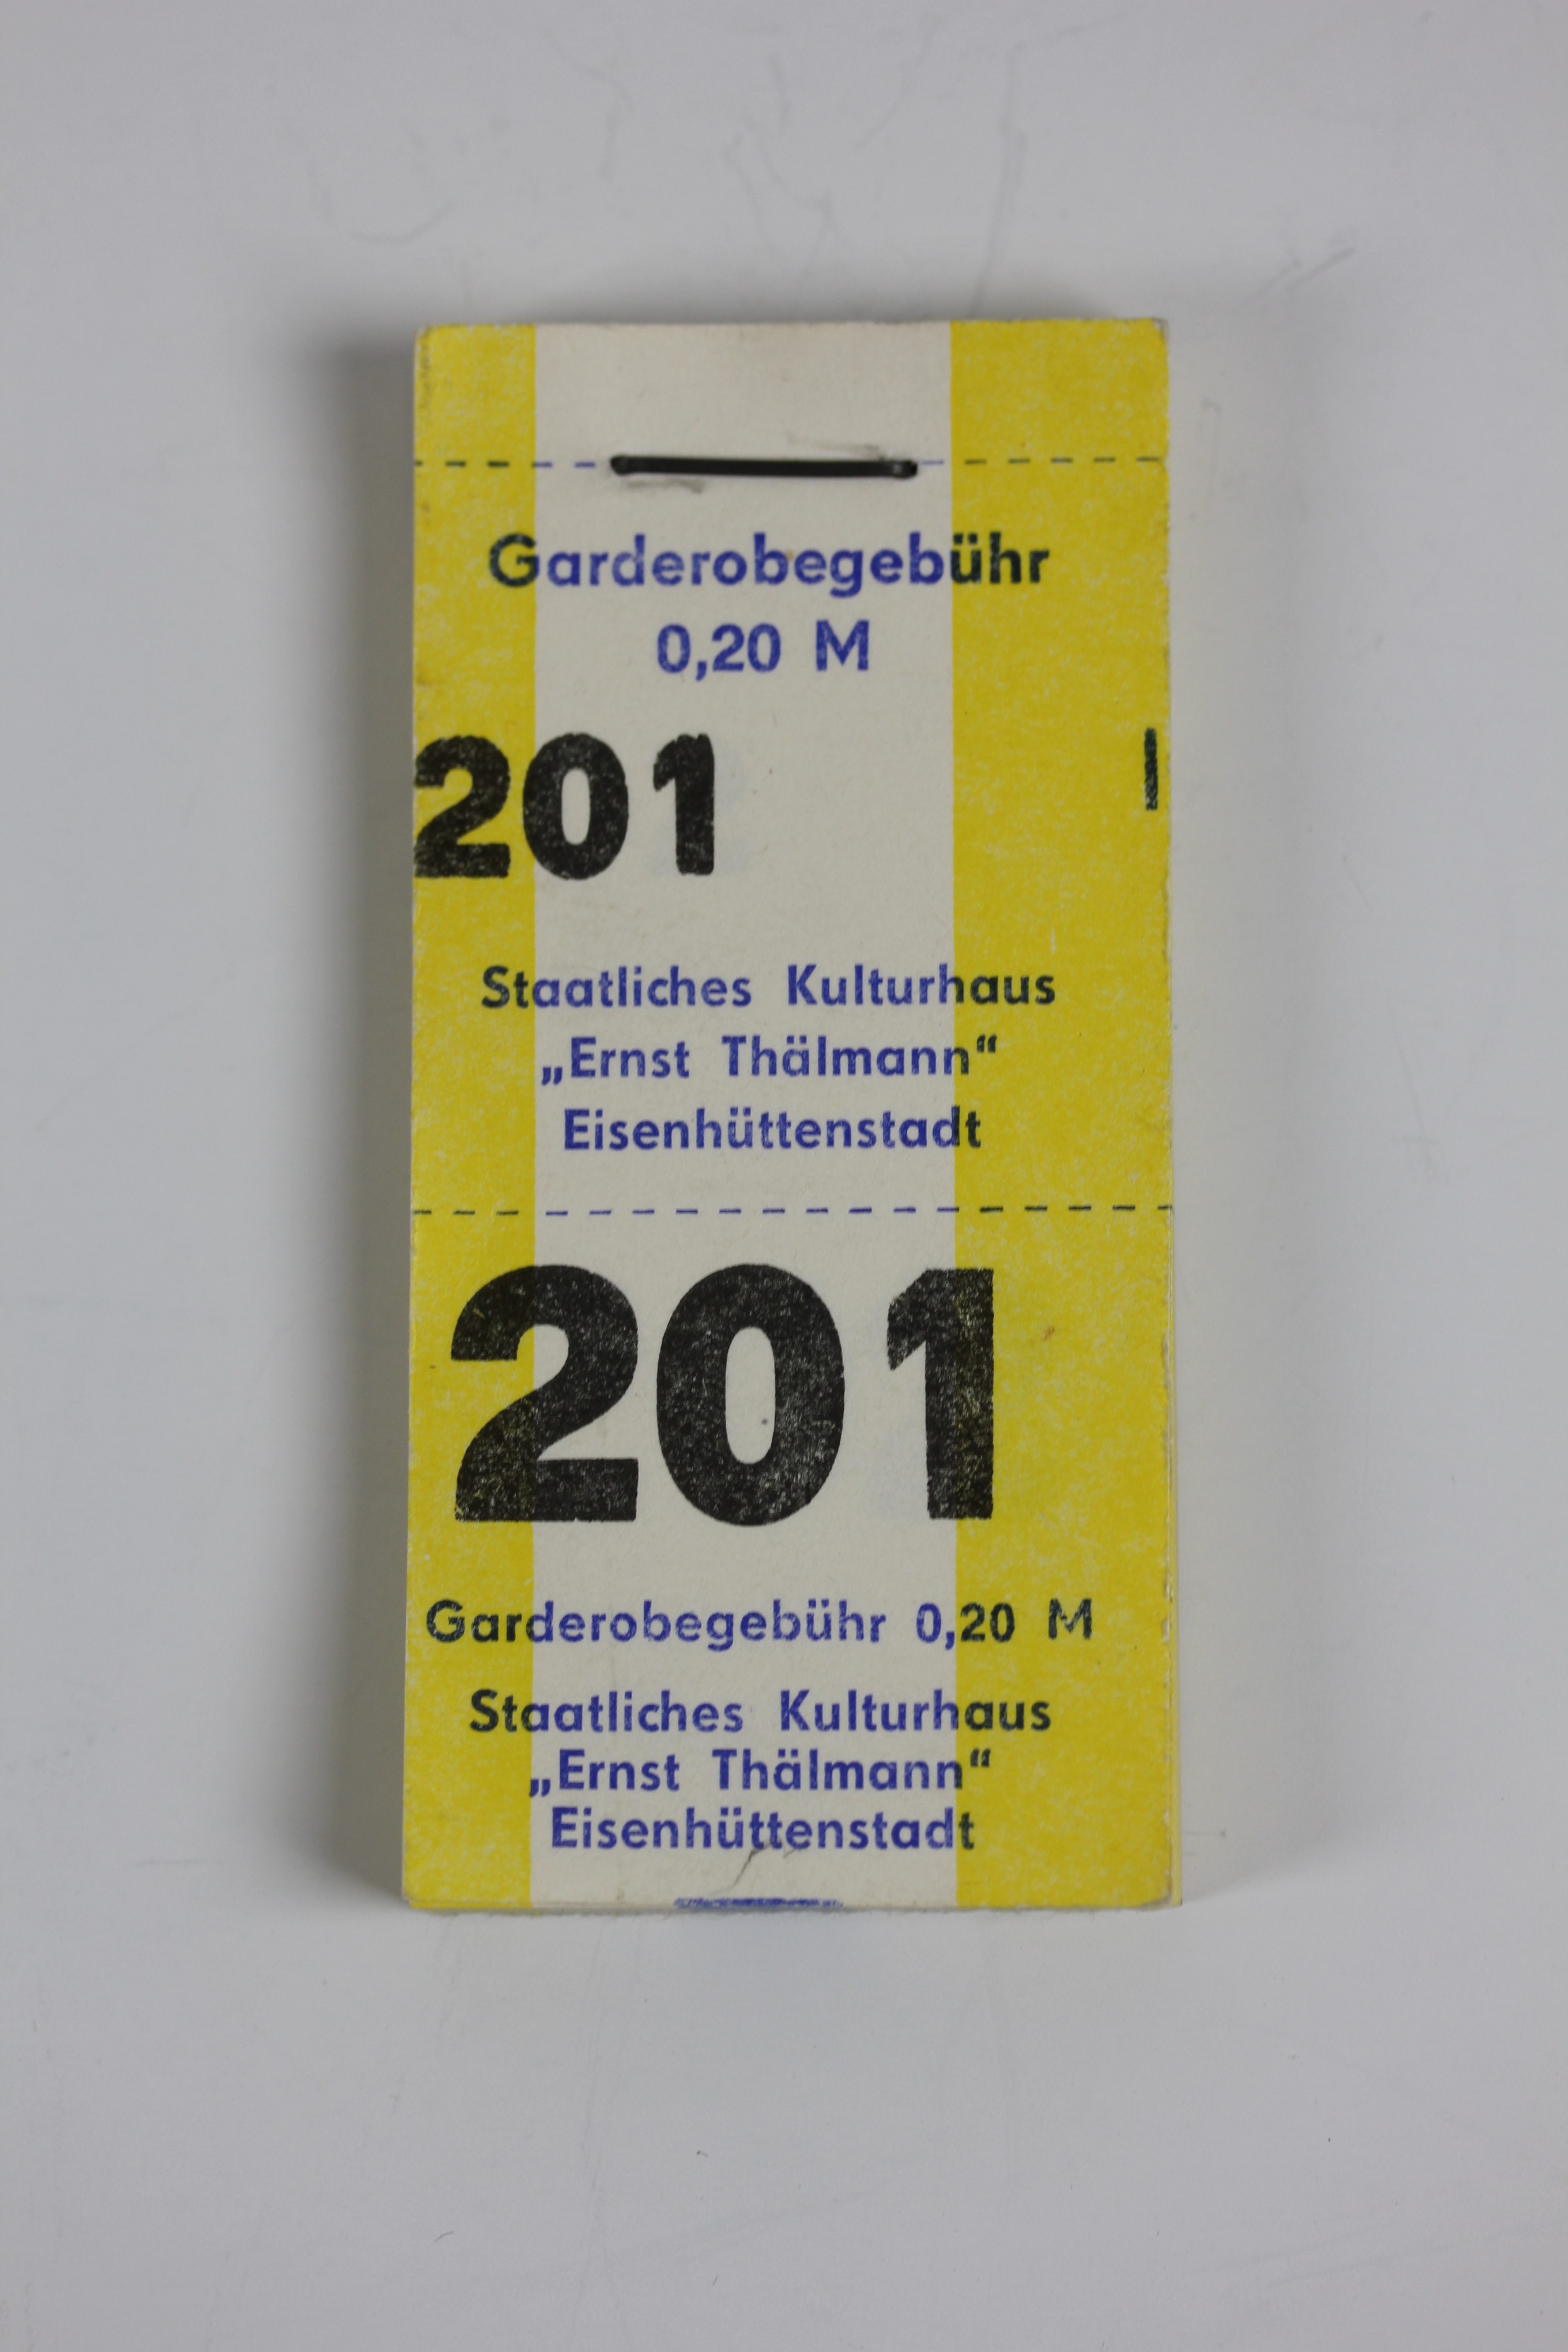 Nummernblock Garderobenmarken des Staatlichen Kulturhauses "Ernst Thälmann" Eisenhüttenstadt (Museum Utopie und Alltag. Alltagskultur und Kunst aus der DDR CC BY-NC-SA)